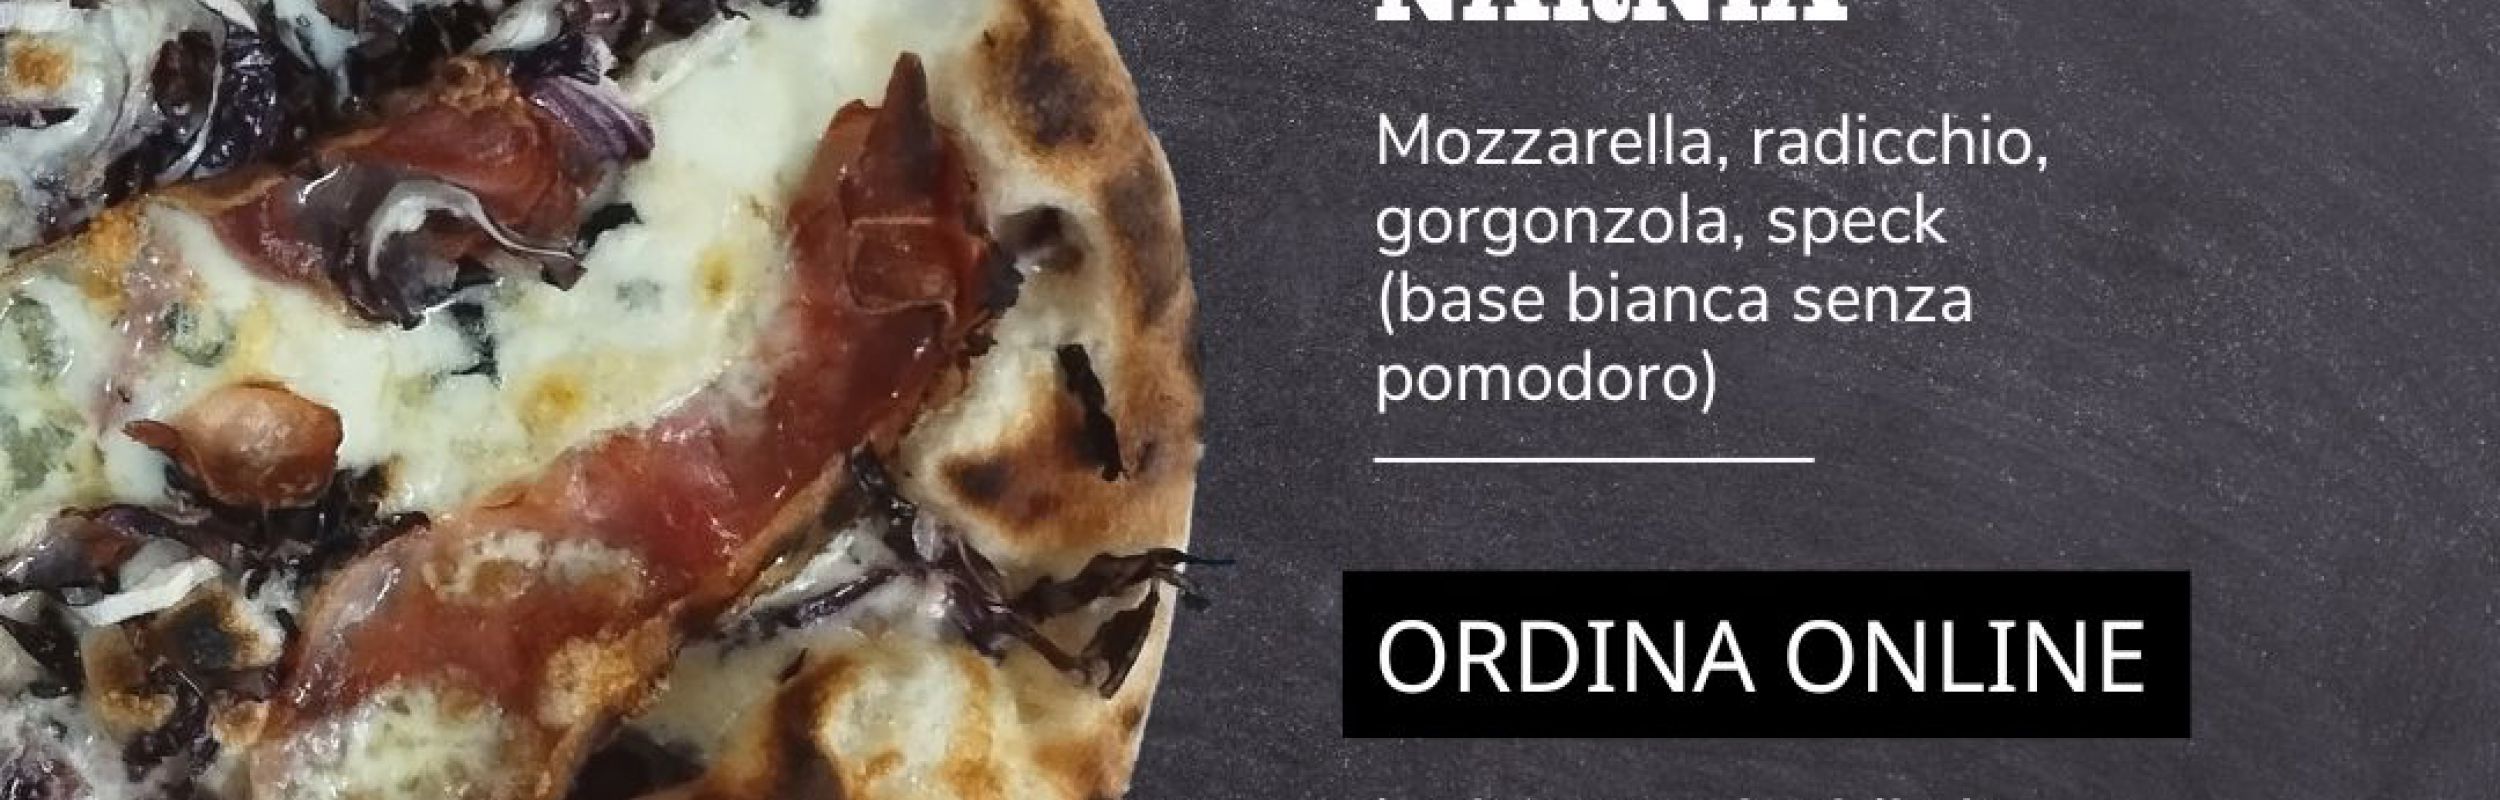 PIZZA NARNIA☃️☃️☃️ - Un Viaggi fino alla fine del mondo, creature fantastiche, epiche battaglie tra il Bene e il Male, dove il nostro pizzaiolo Jonny ha cr...